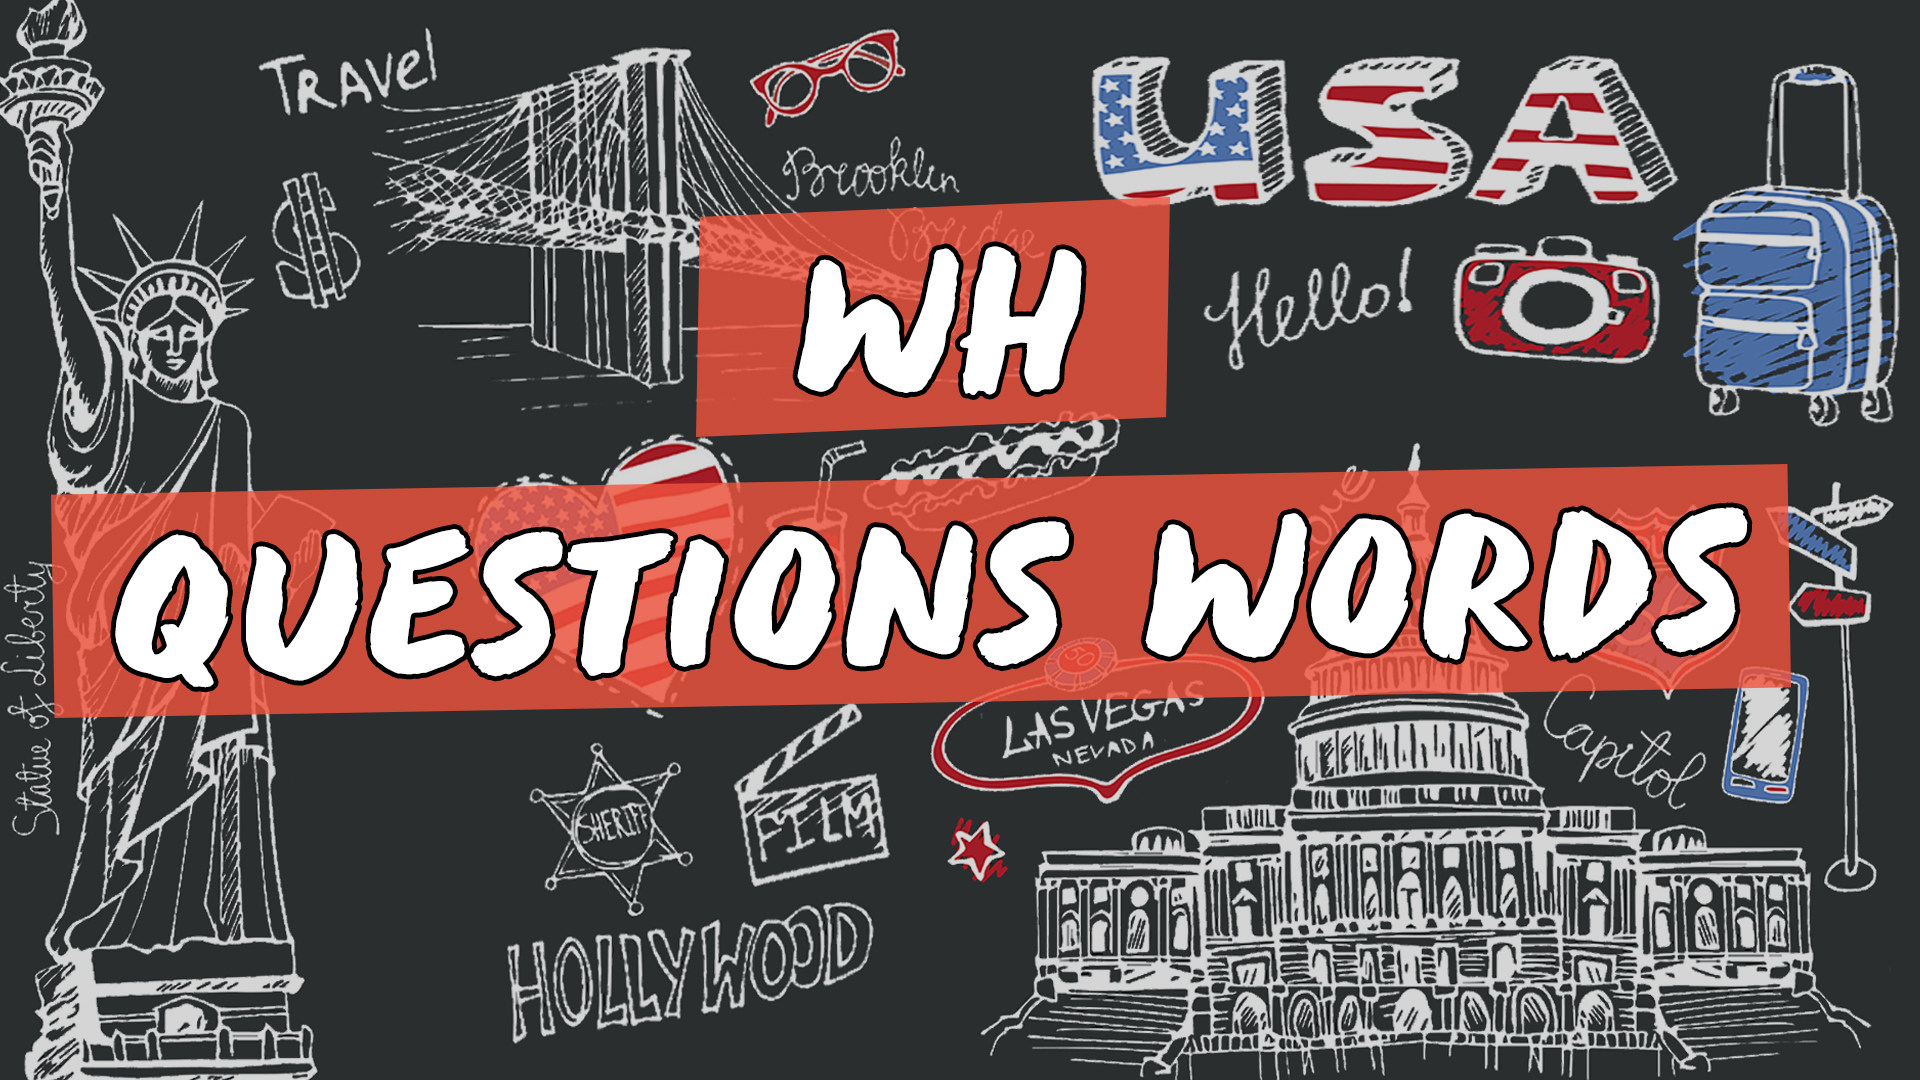 "WH - Questions Words" escrito sobre fundo com ilustração de diversos símbolos estadunidenses